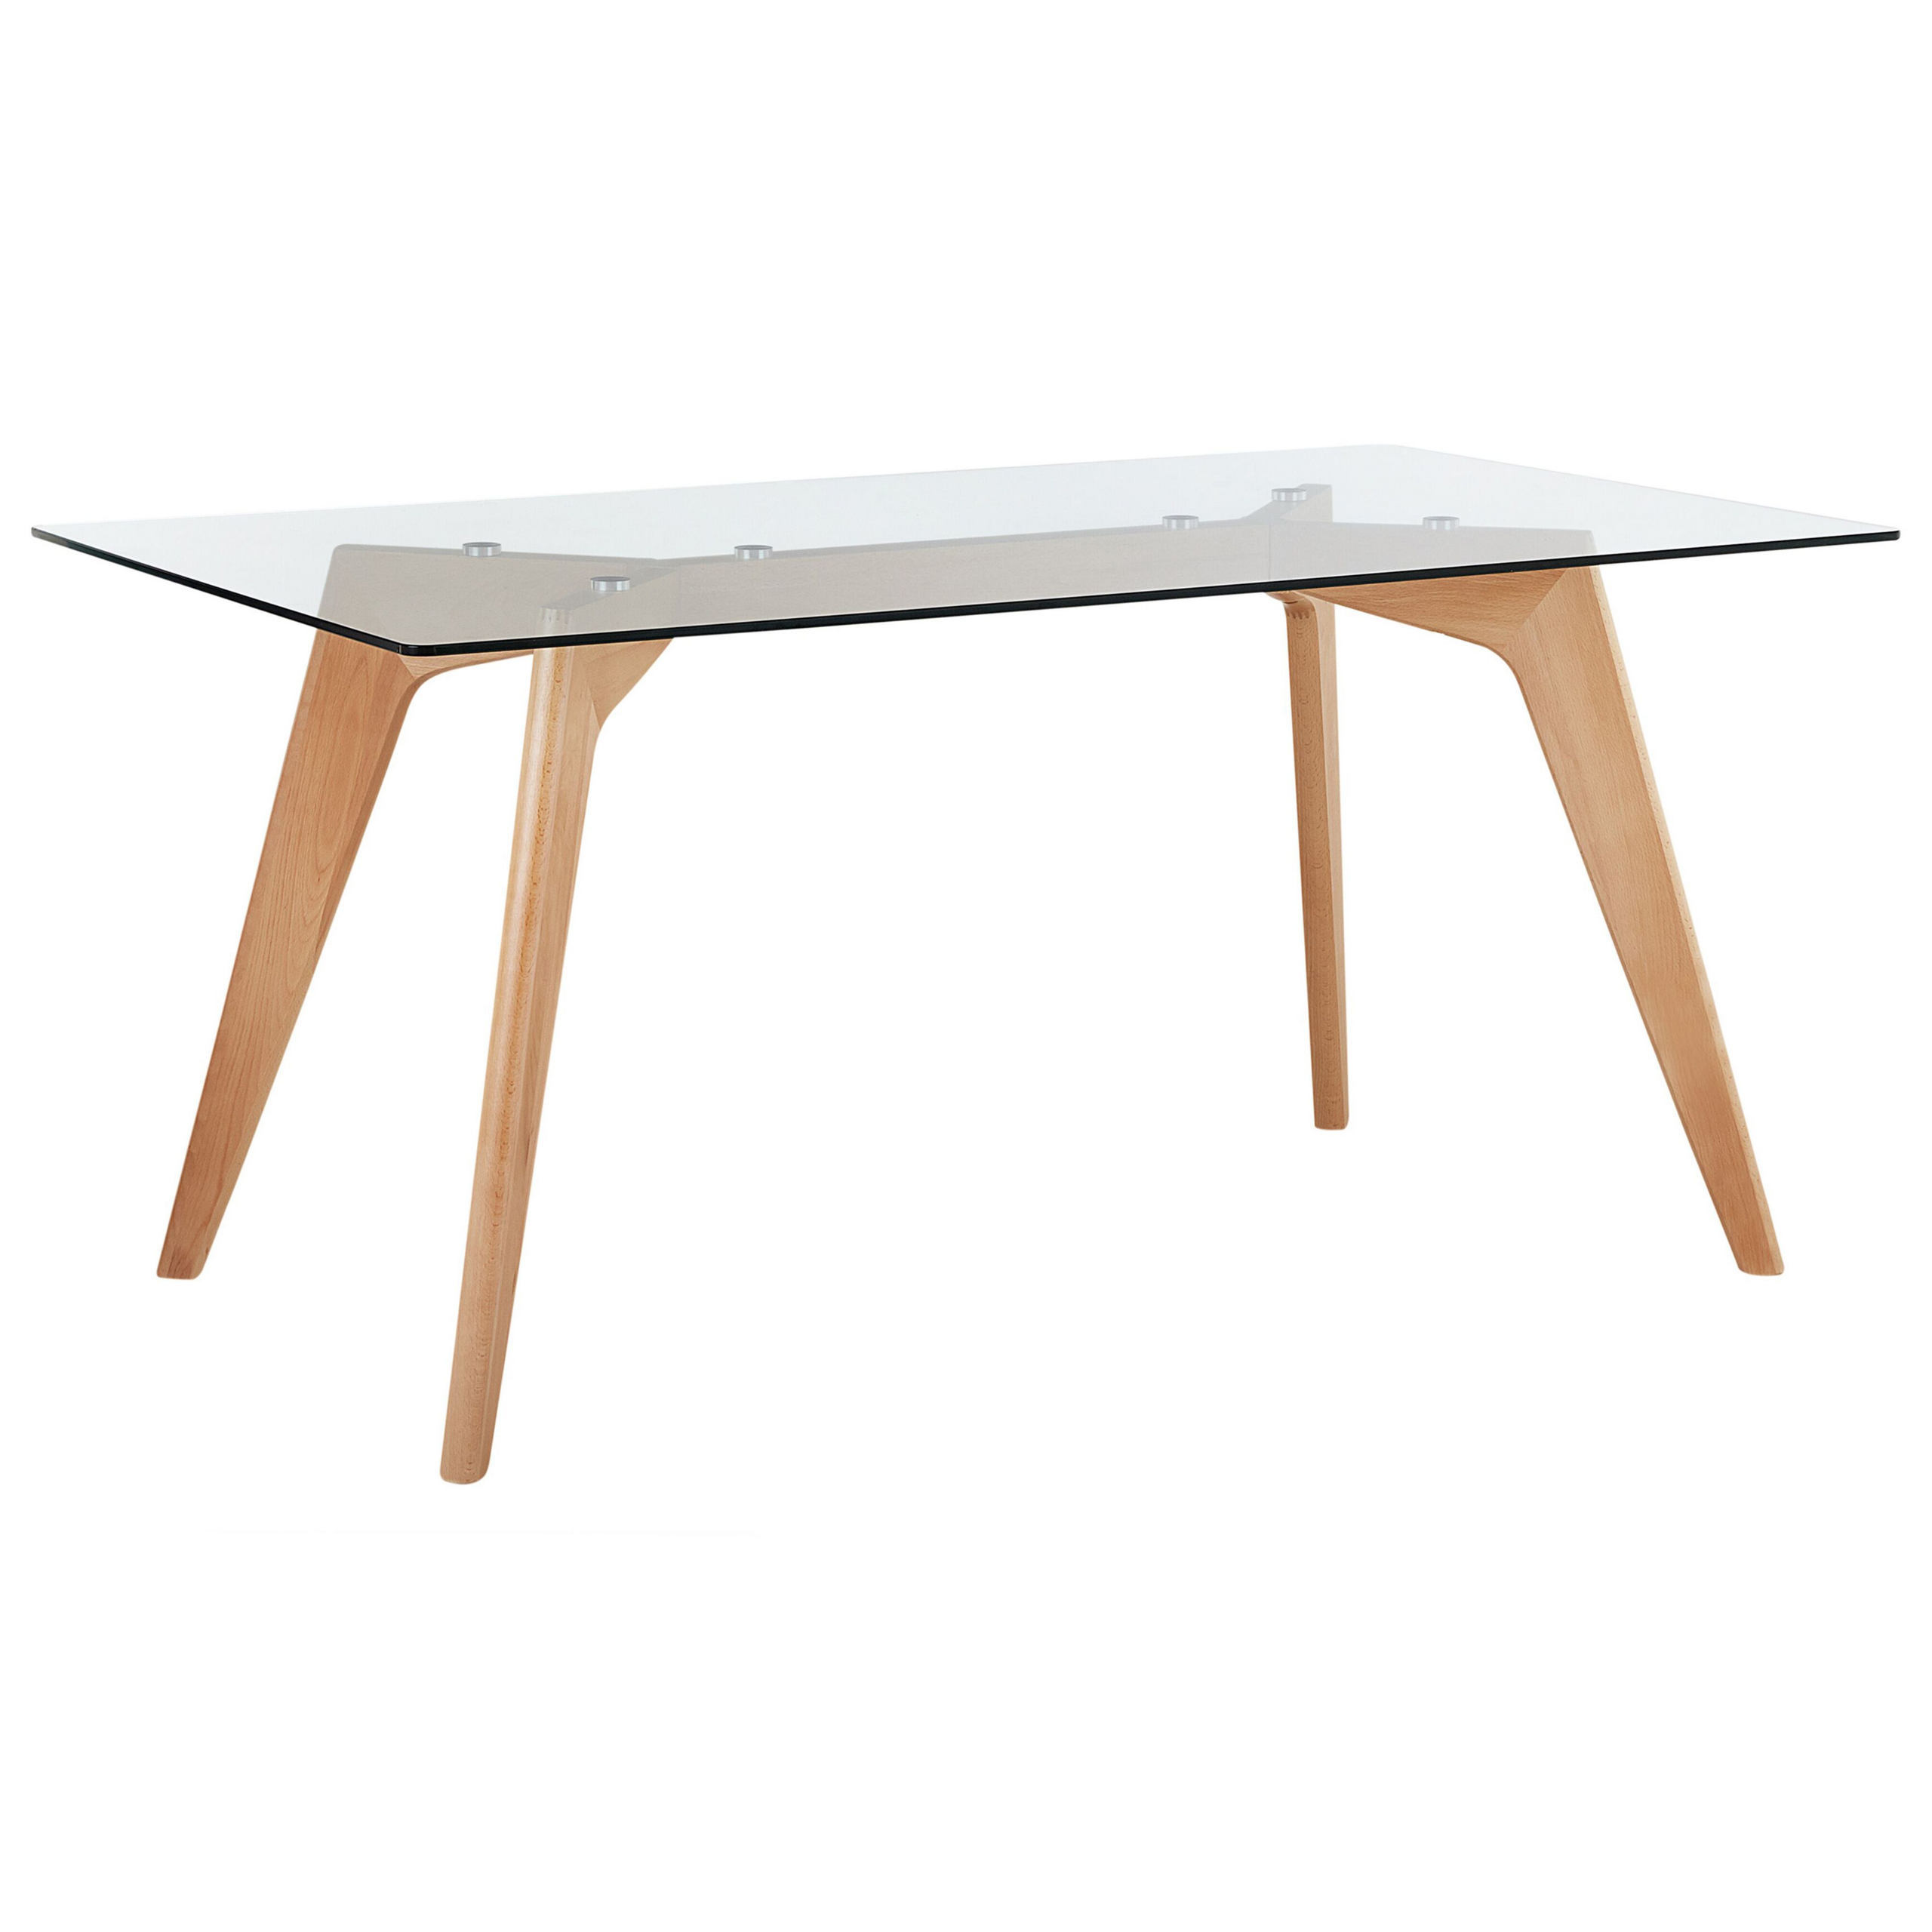 Beliani Dining Table Transparent 160 x 90 cm Glass Top Wooden Legs Rectangular Scandinavian Modern